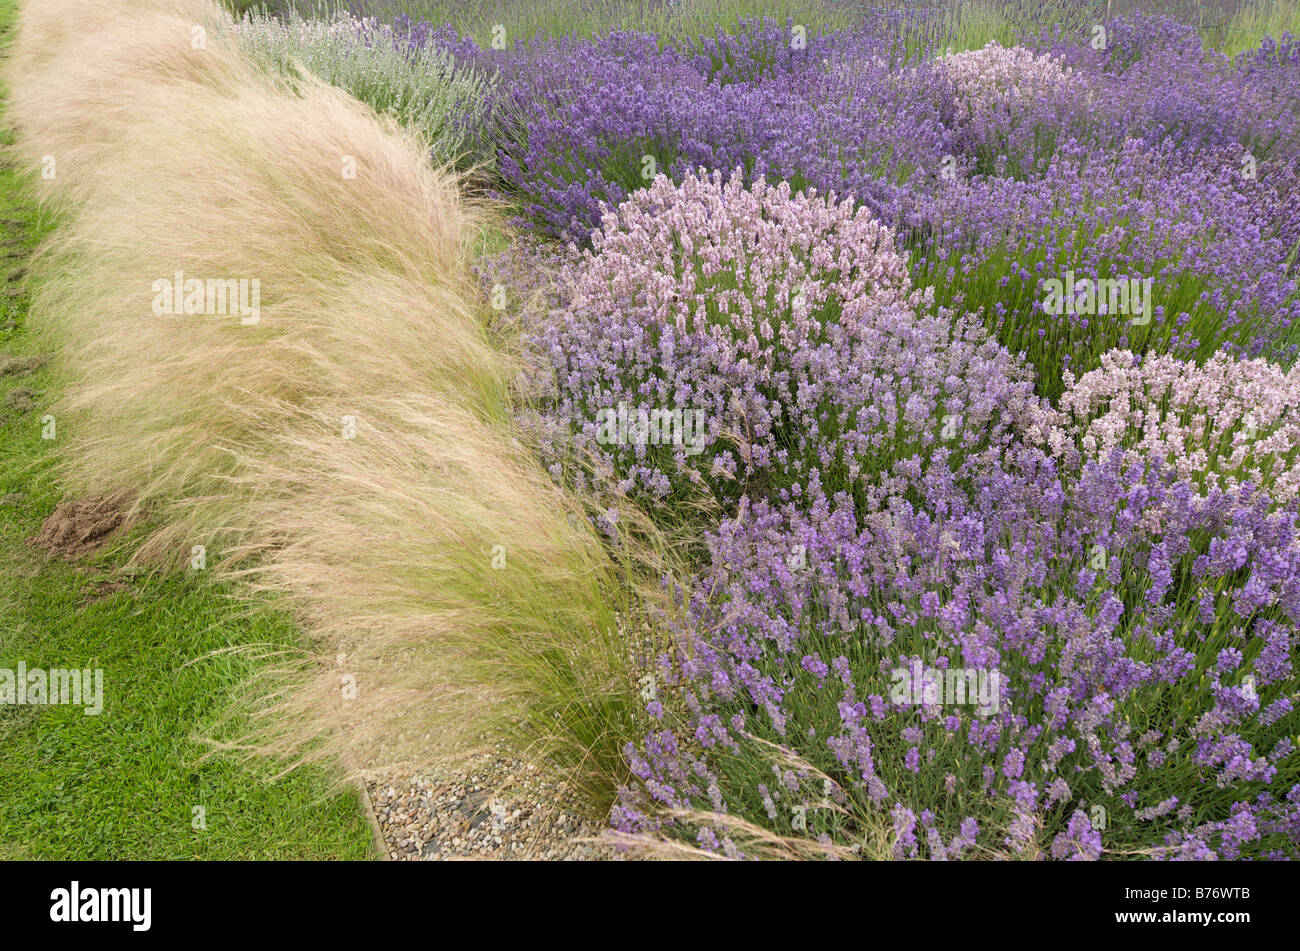 Giardino di lavanda con angel hair grass - Stipa tenuissima Foto Stock